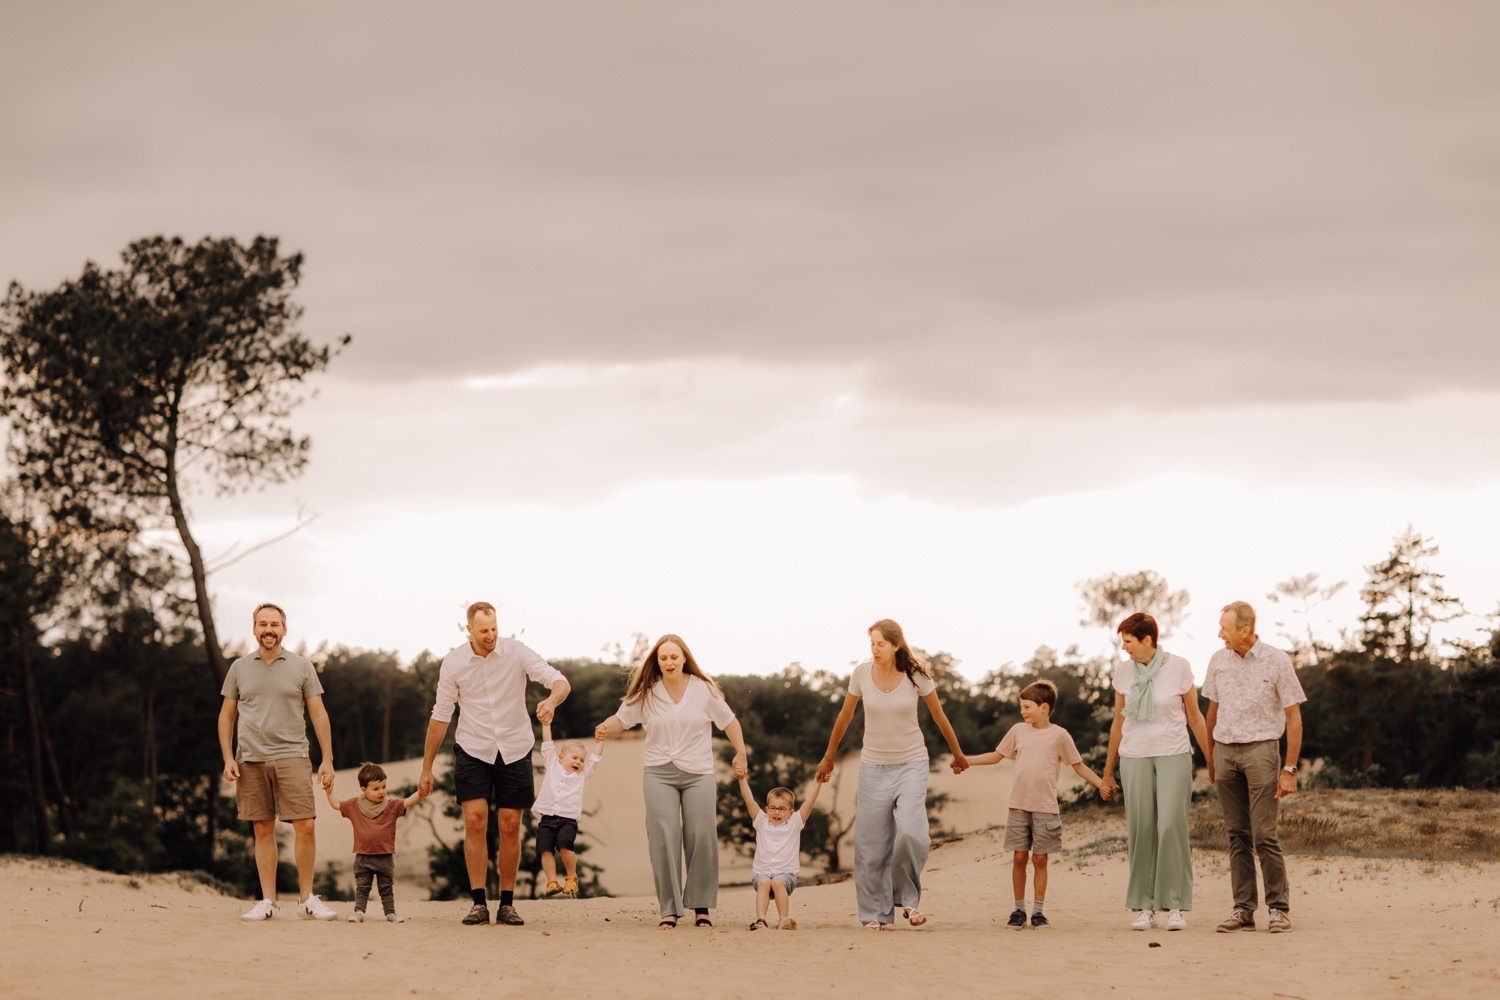 gezinsfotograaf Limburg - de hele familie wandelt door het zand in Hechtel